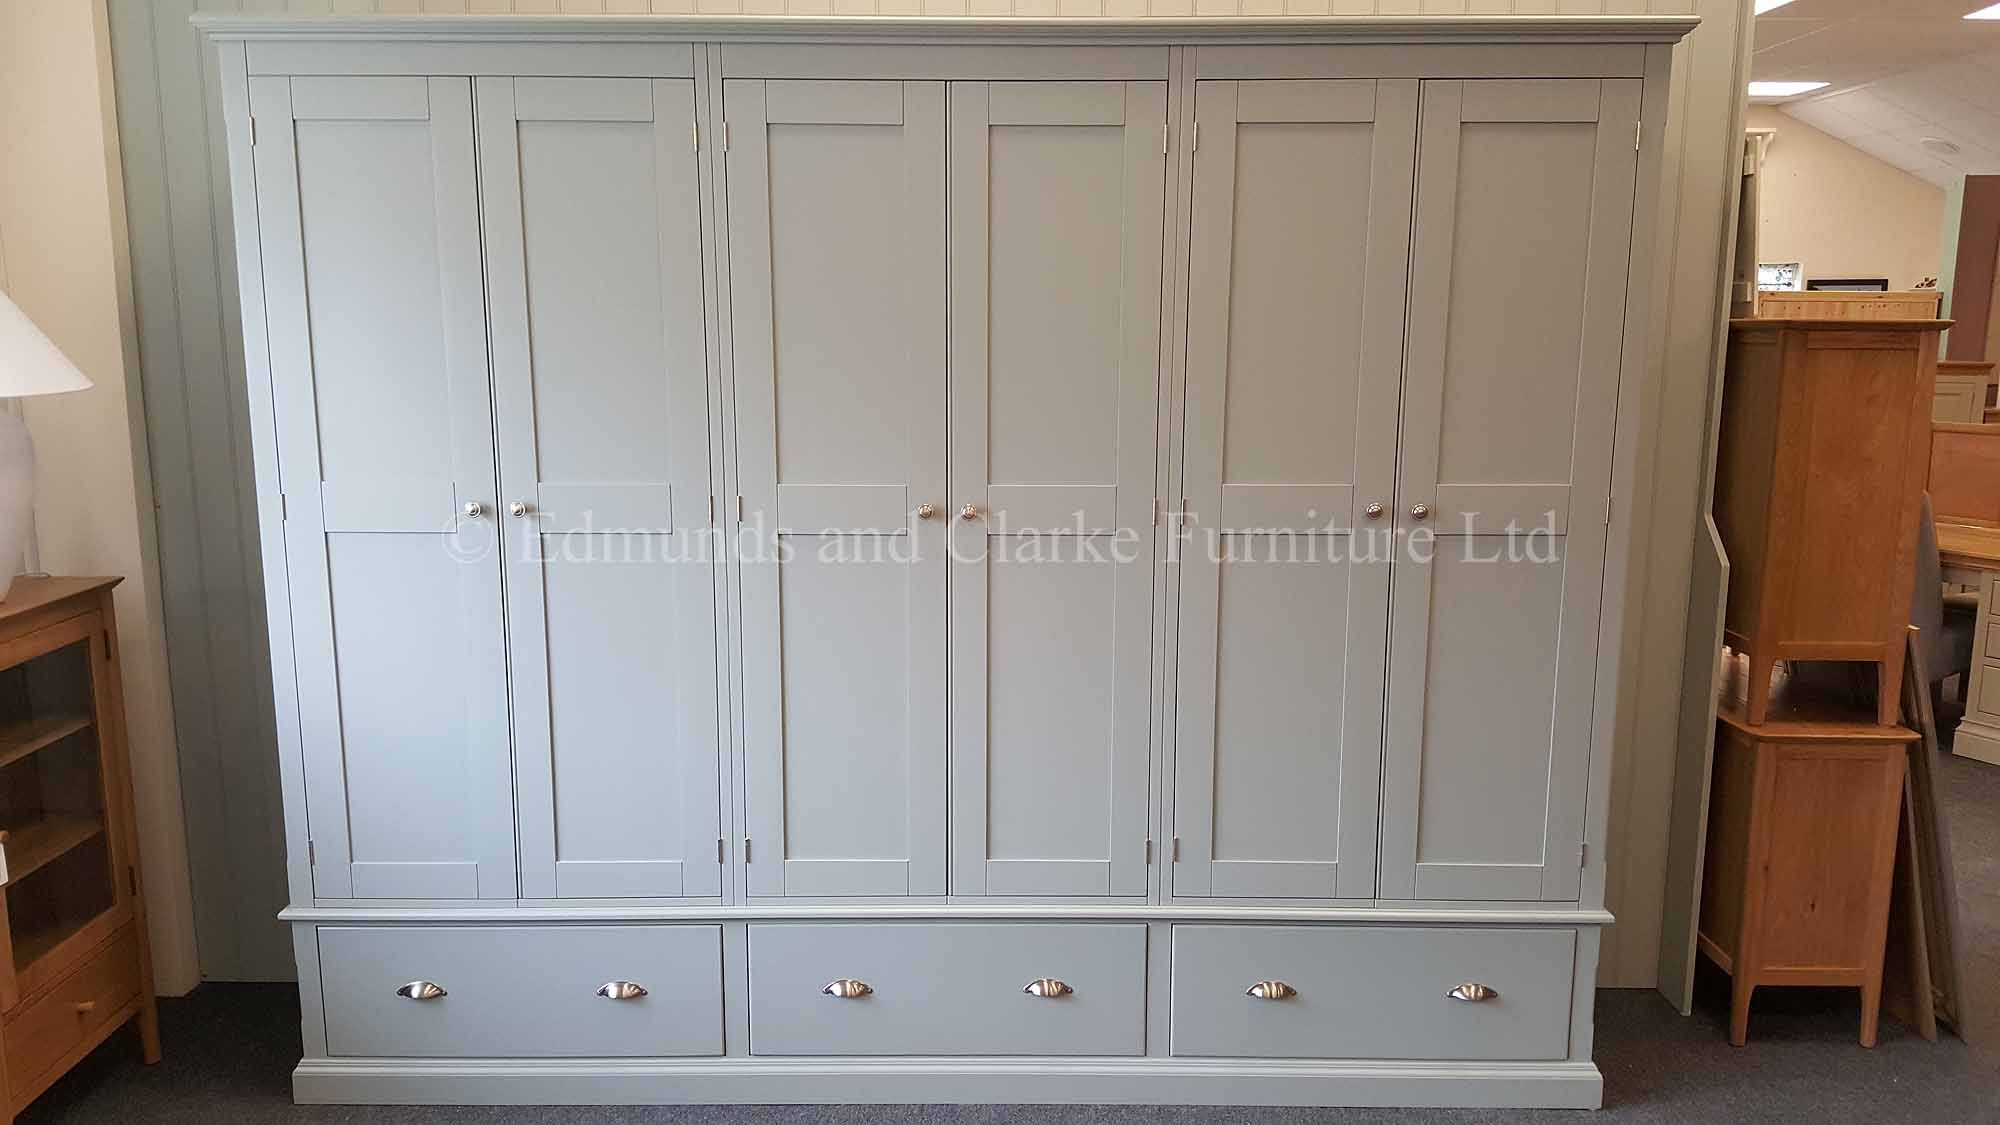 Bespoke 6 Door Wardrobe | Edmunds & Clarke Furniture Ltd With 6 Doors Wardrobes (Photo 14 of 15)